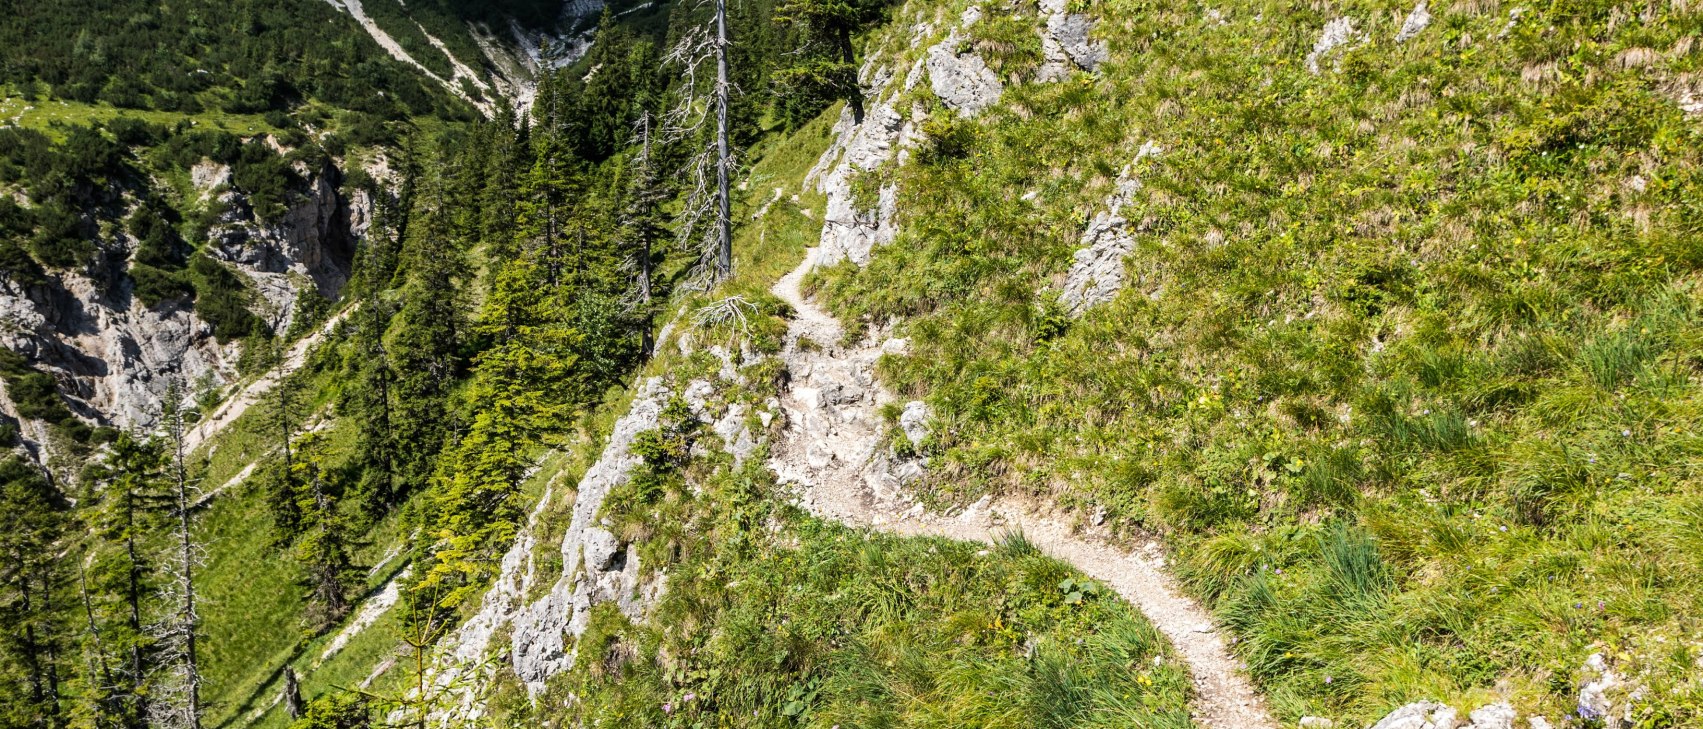 Lakaeiensteig steiler Pfad zum Soiernhaus, © Alpenwelt Karwendel | Zugspitz Region GmbH |Erika Sprengler, Erika Spengler / ulligunde.com